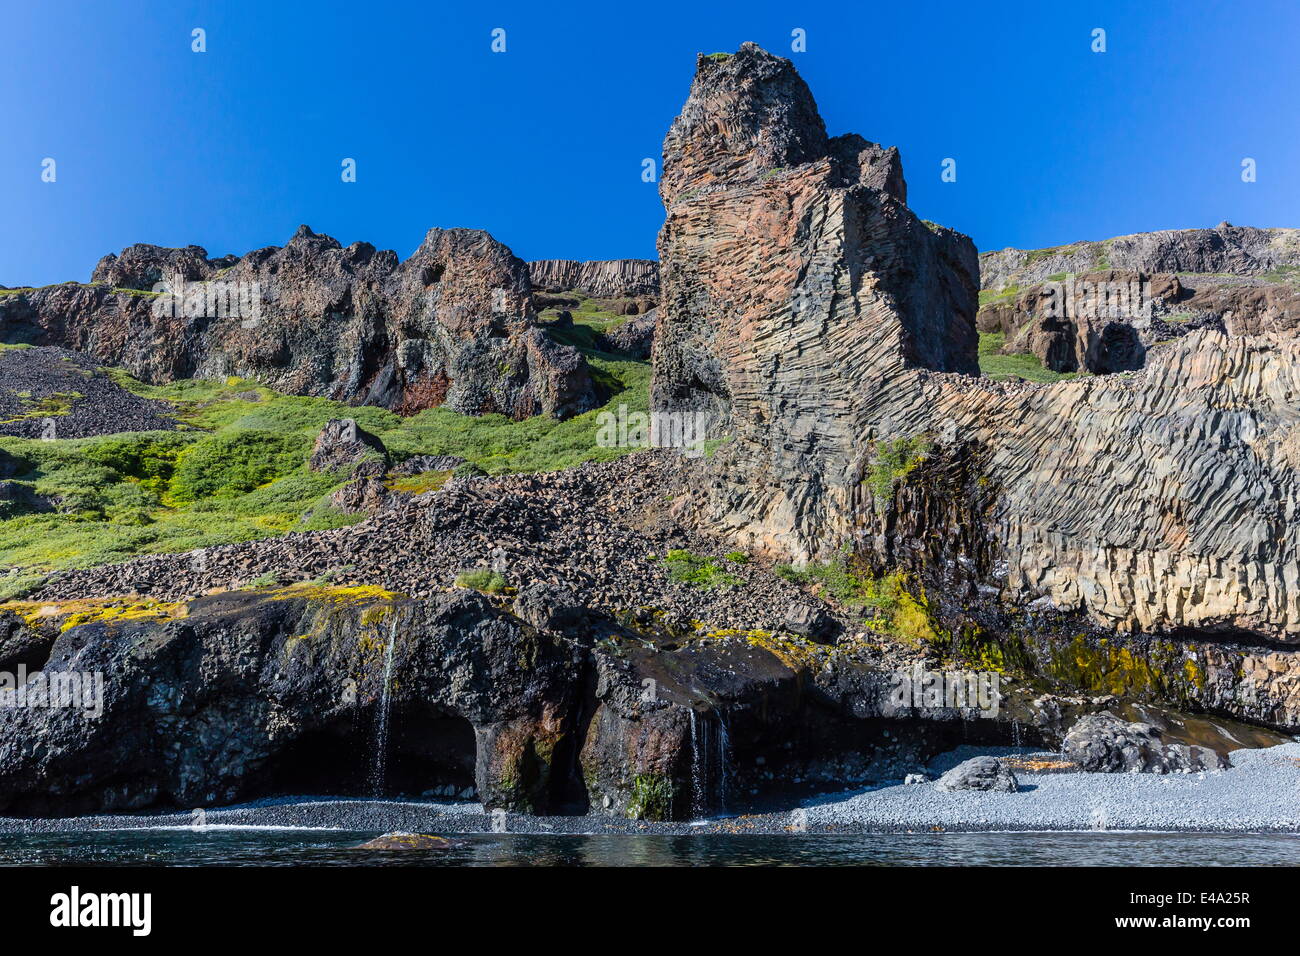 Ejemplos increíbles de basalto columnar en la costa sur de la isla de Disko, Kuannersuit, Groenlandia, las regiones polares Foto de stock